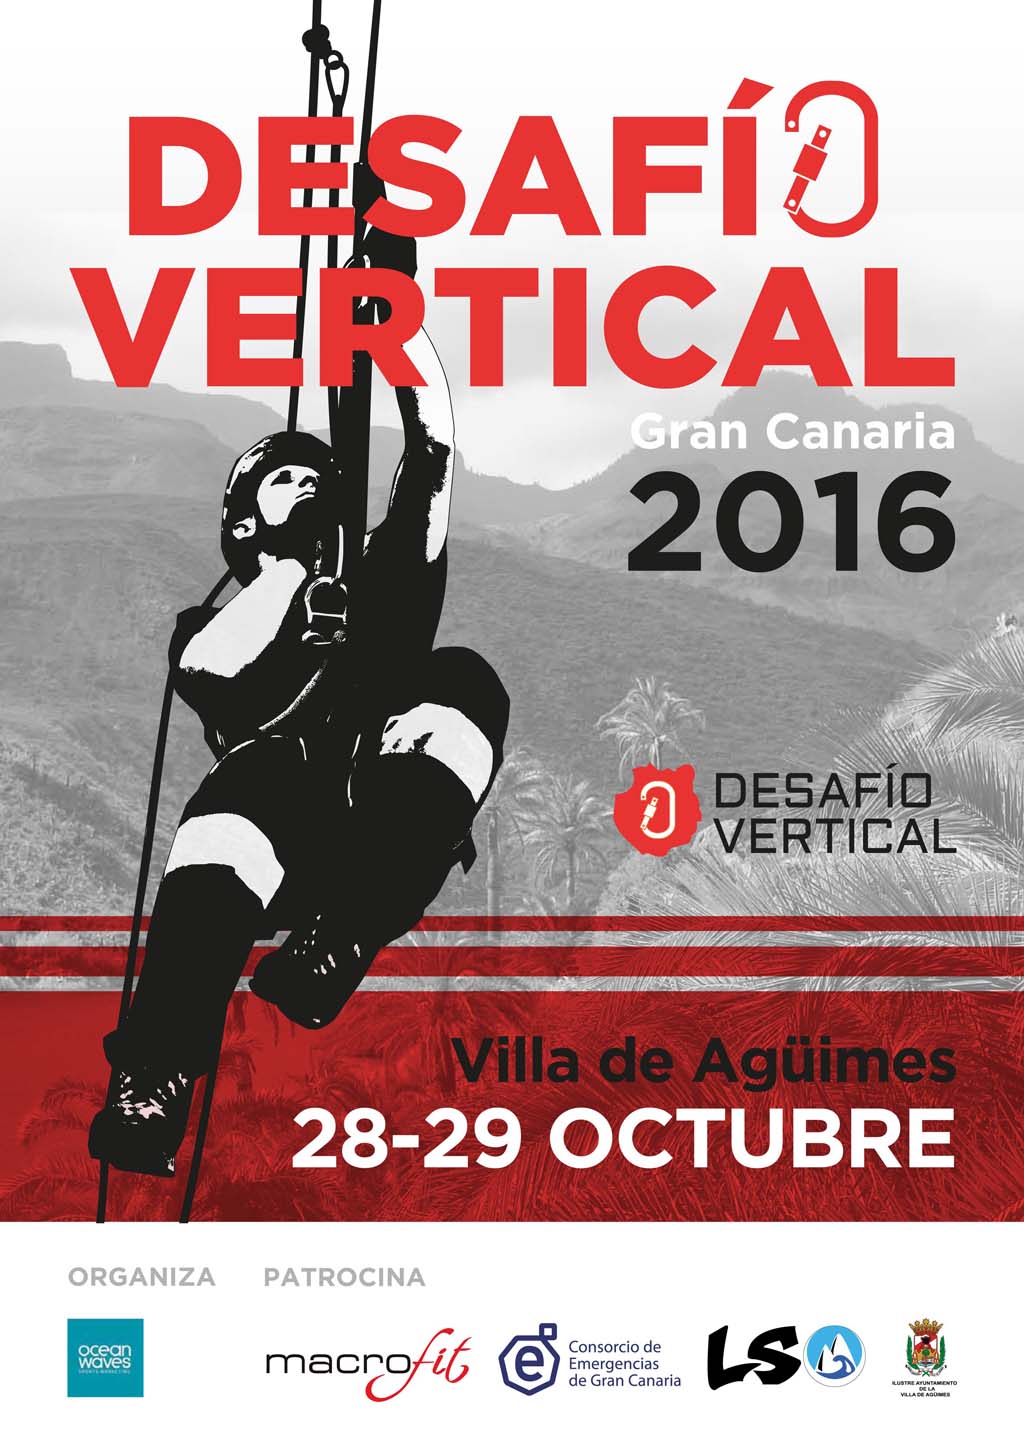 #GranCanaria organiza el I Desafío Vertical, el 28 y 29 de octubre @emergencias_gc